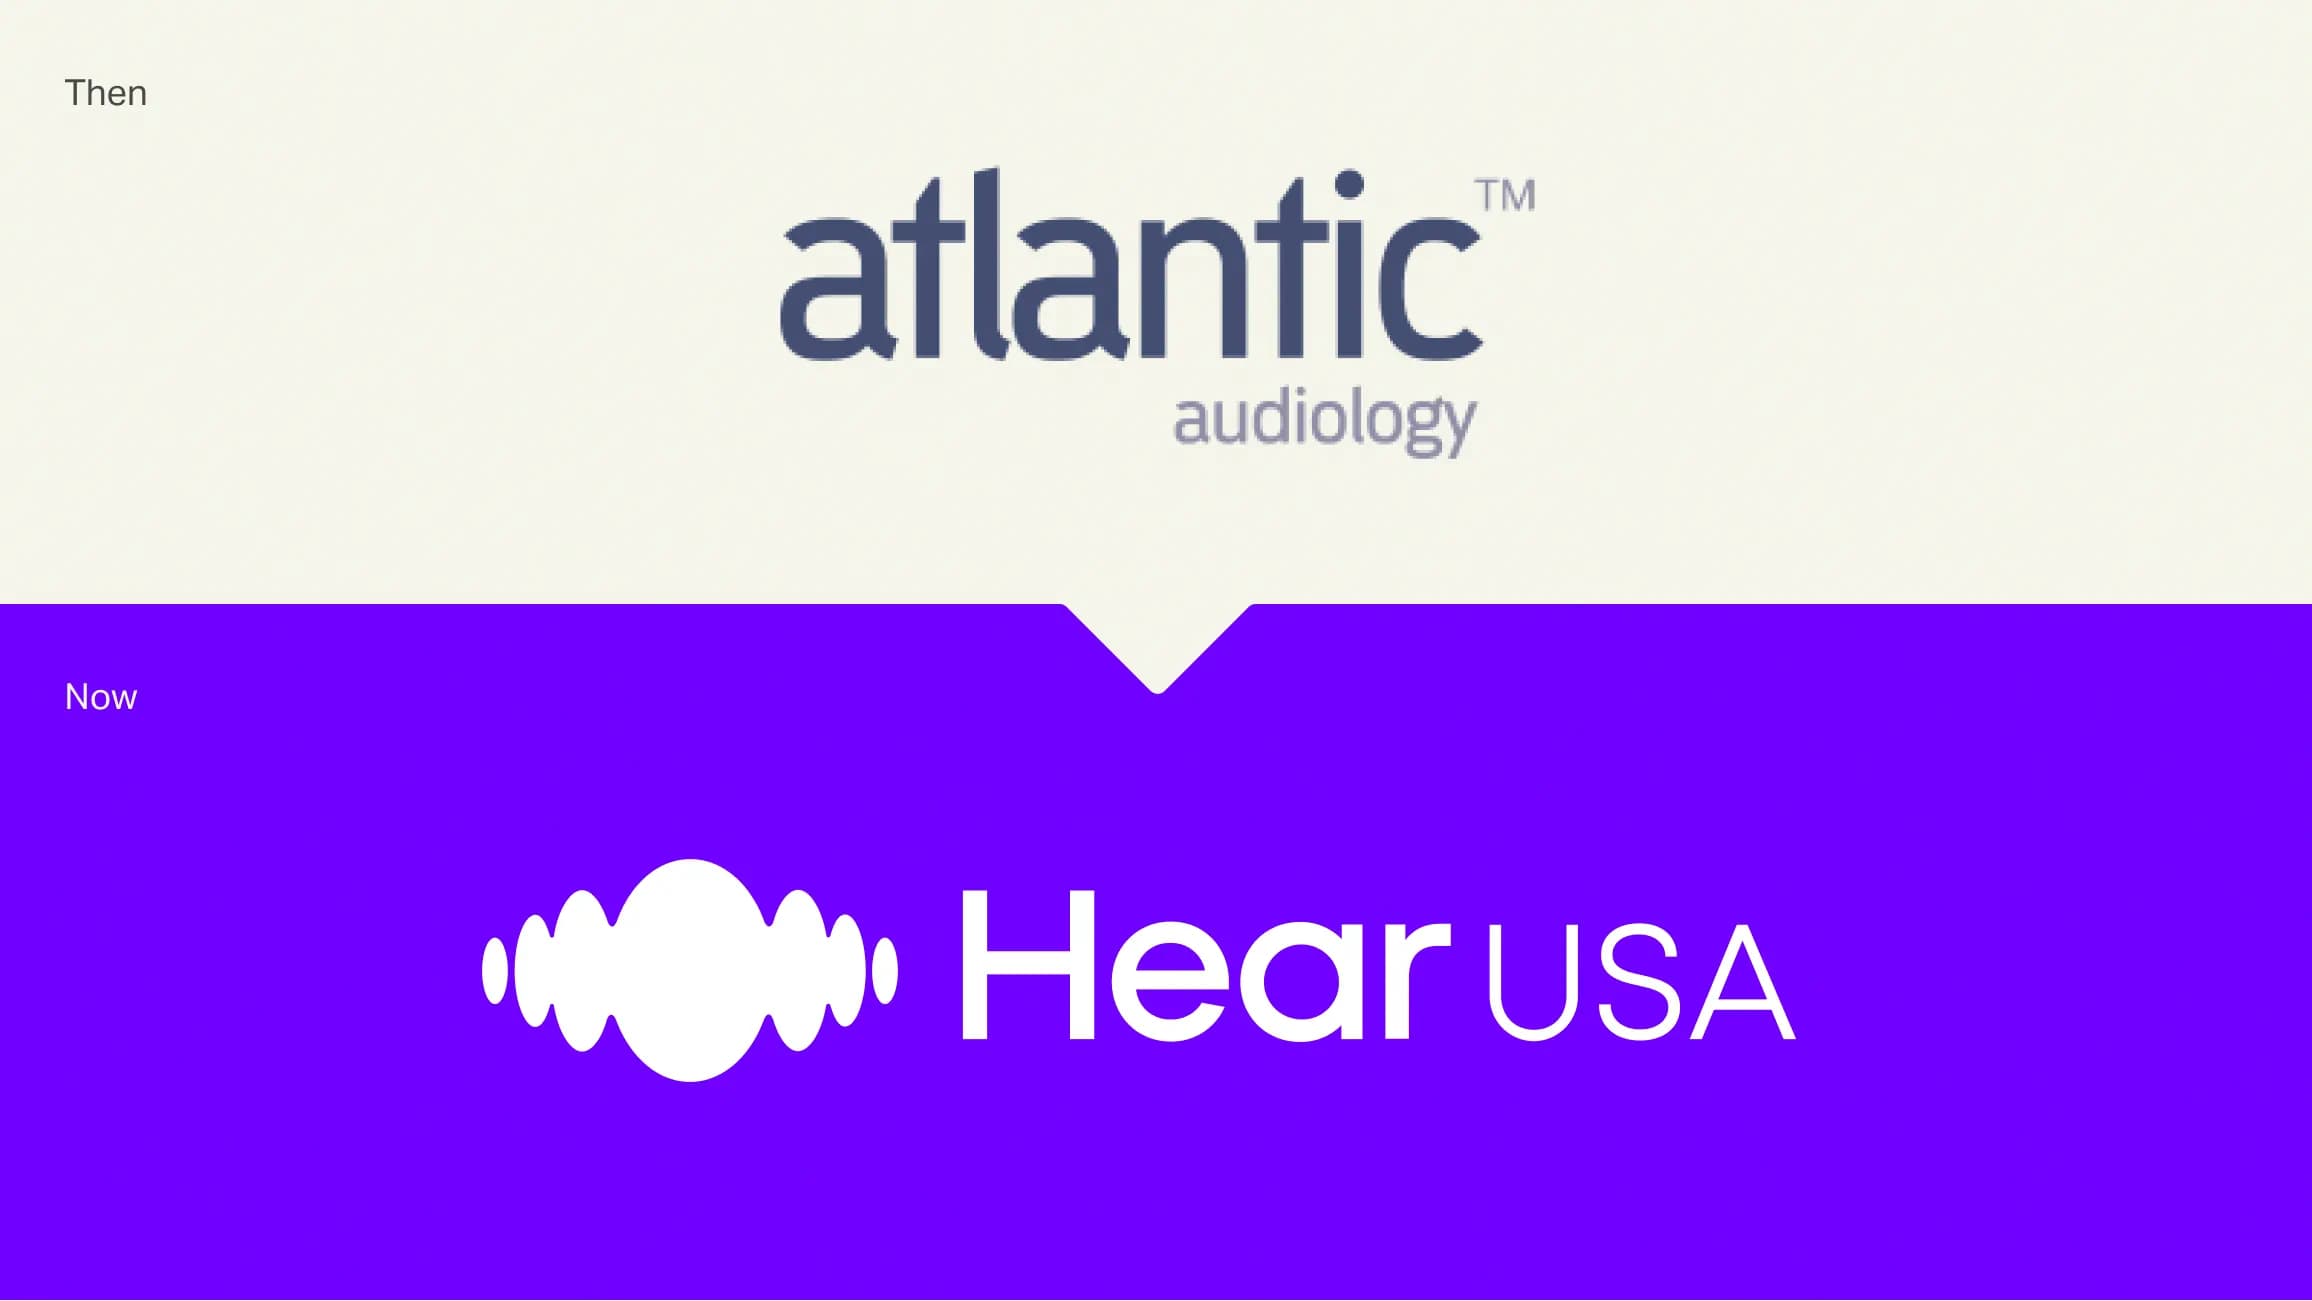 Atlantic Audiology Rebranding